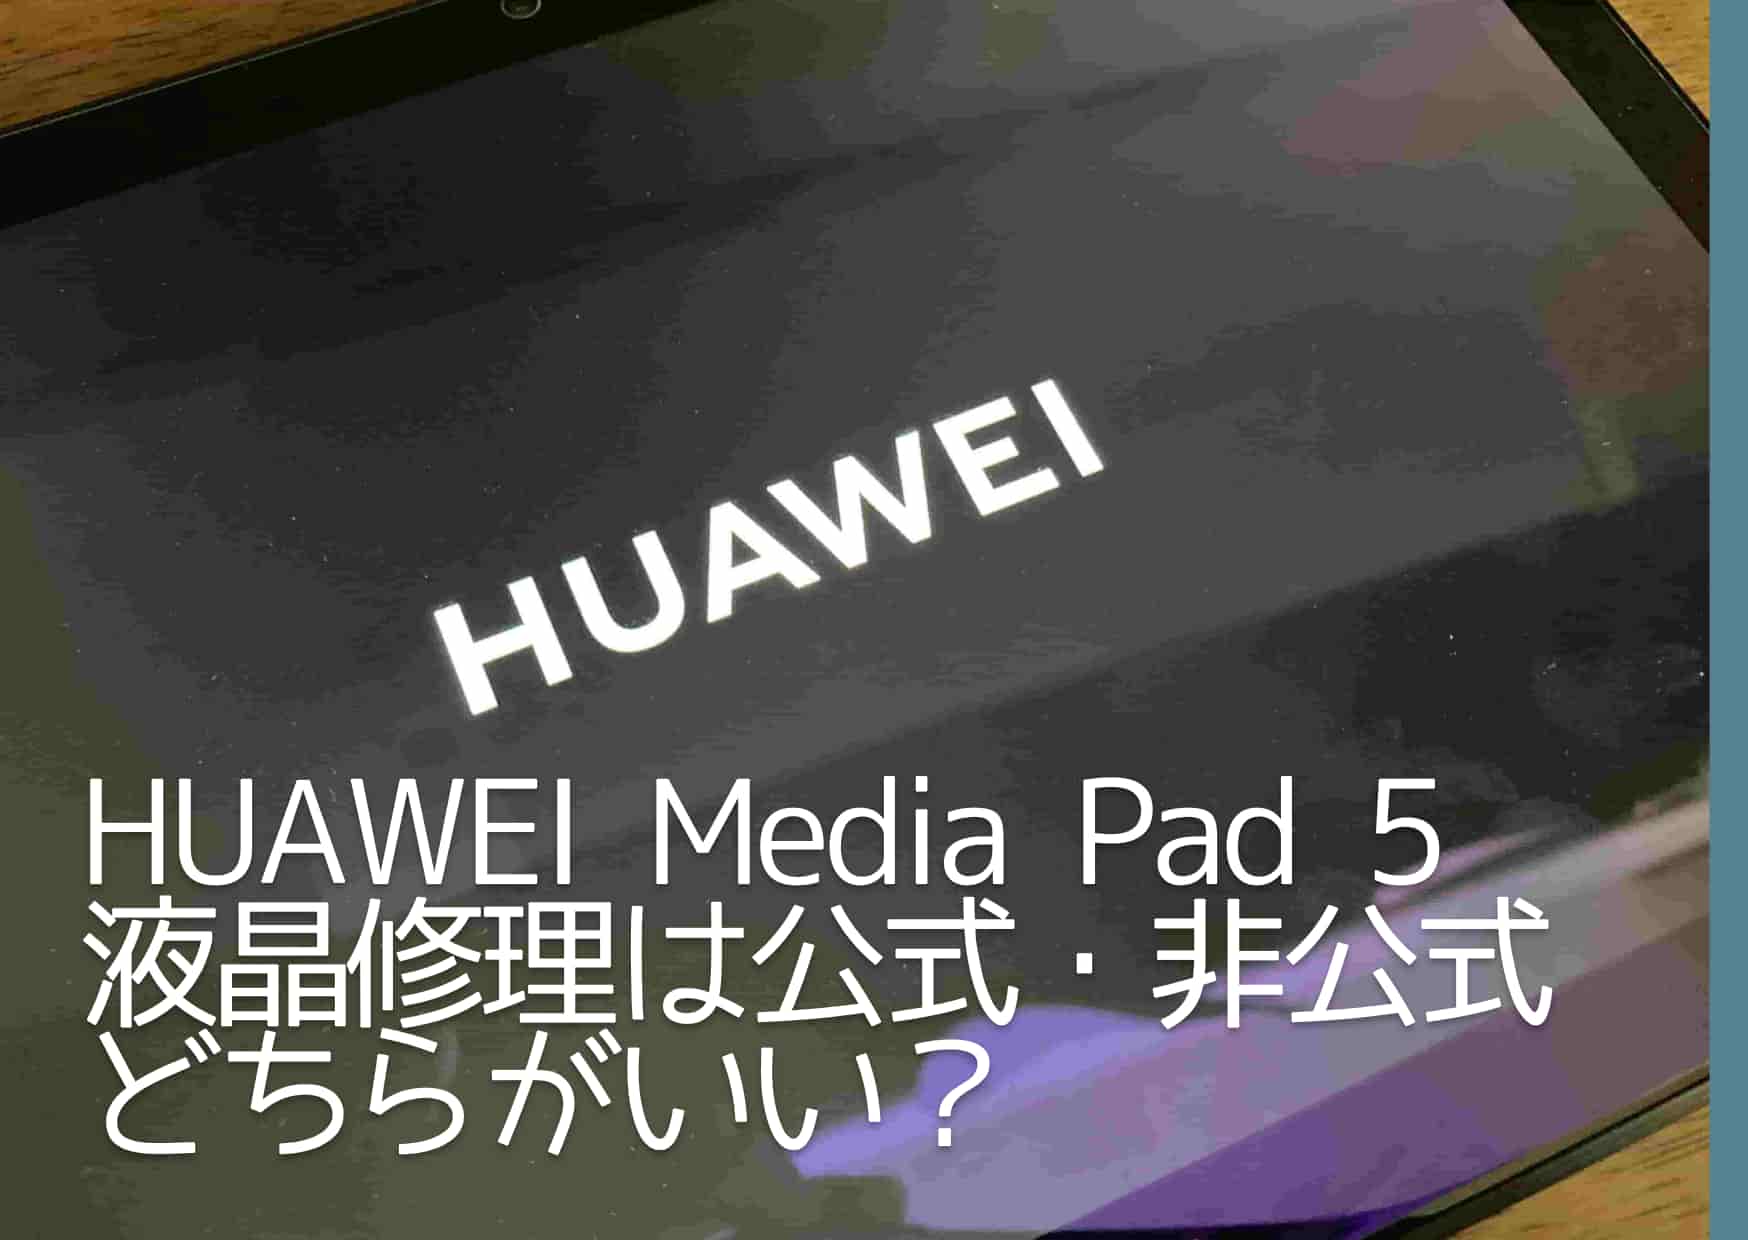 HUAWEI Media Pad 5液晶画面の修理を公式サービスか非公式店舗のどちらでするのがいいのか